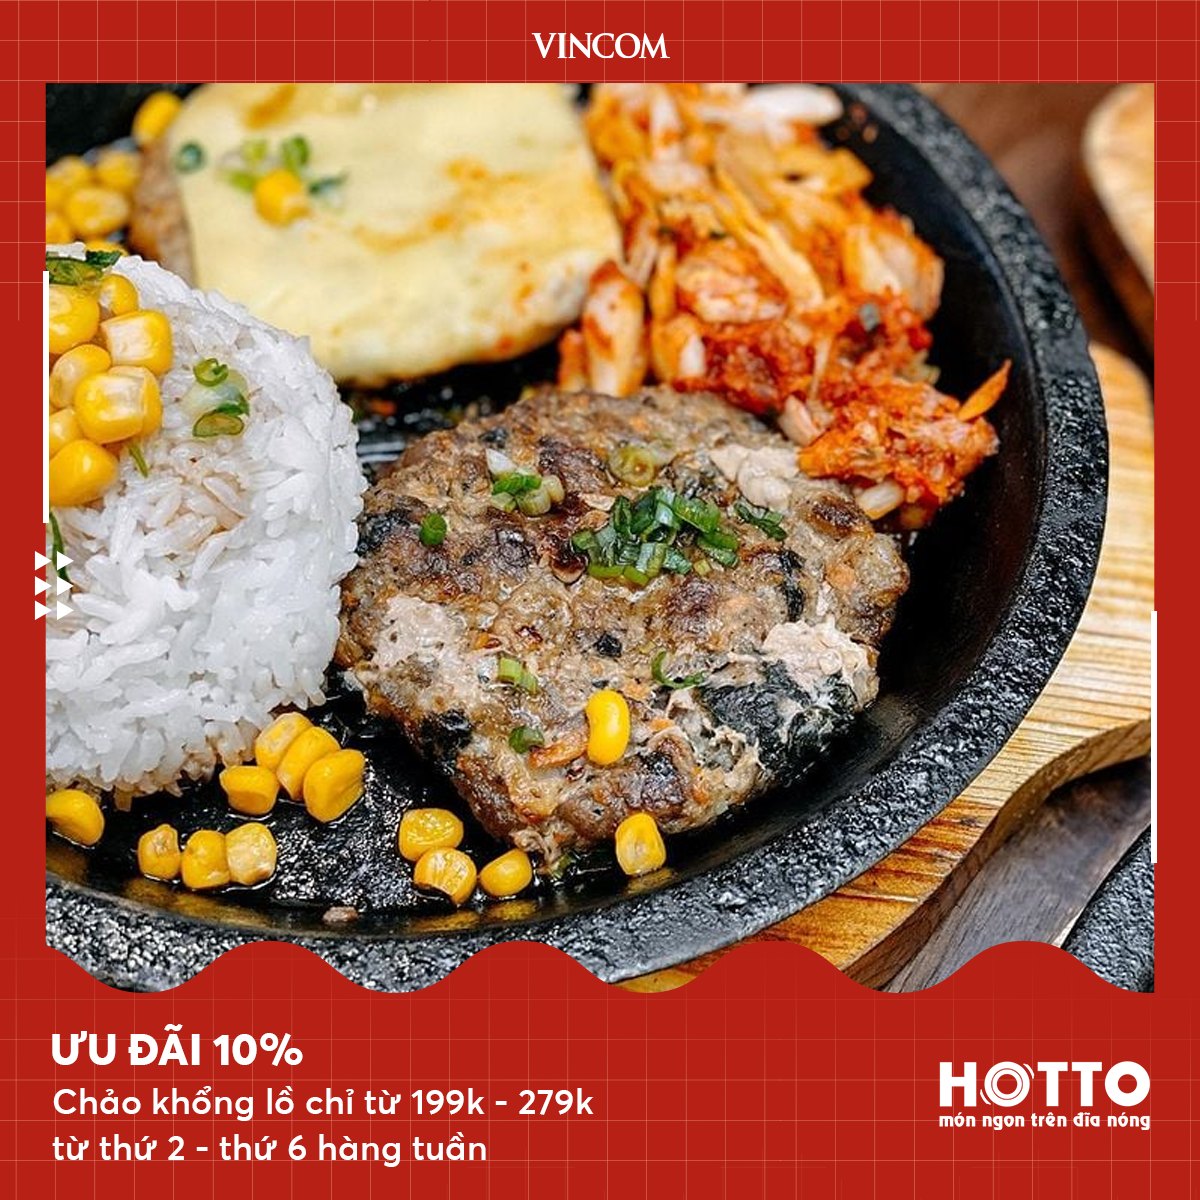 Ưu đãi lên đến 10% khi dùng bữa tại Hotto